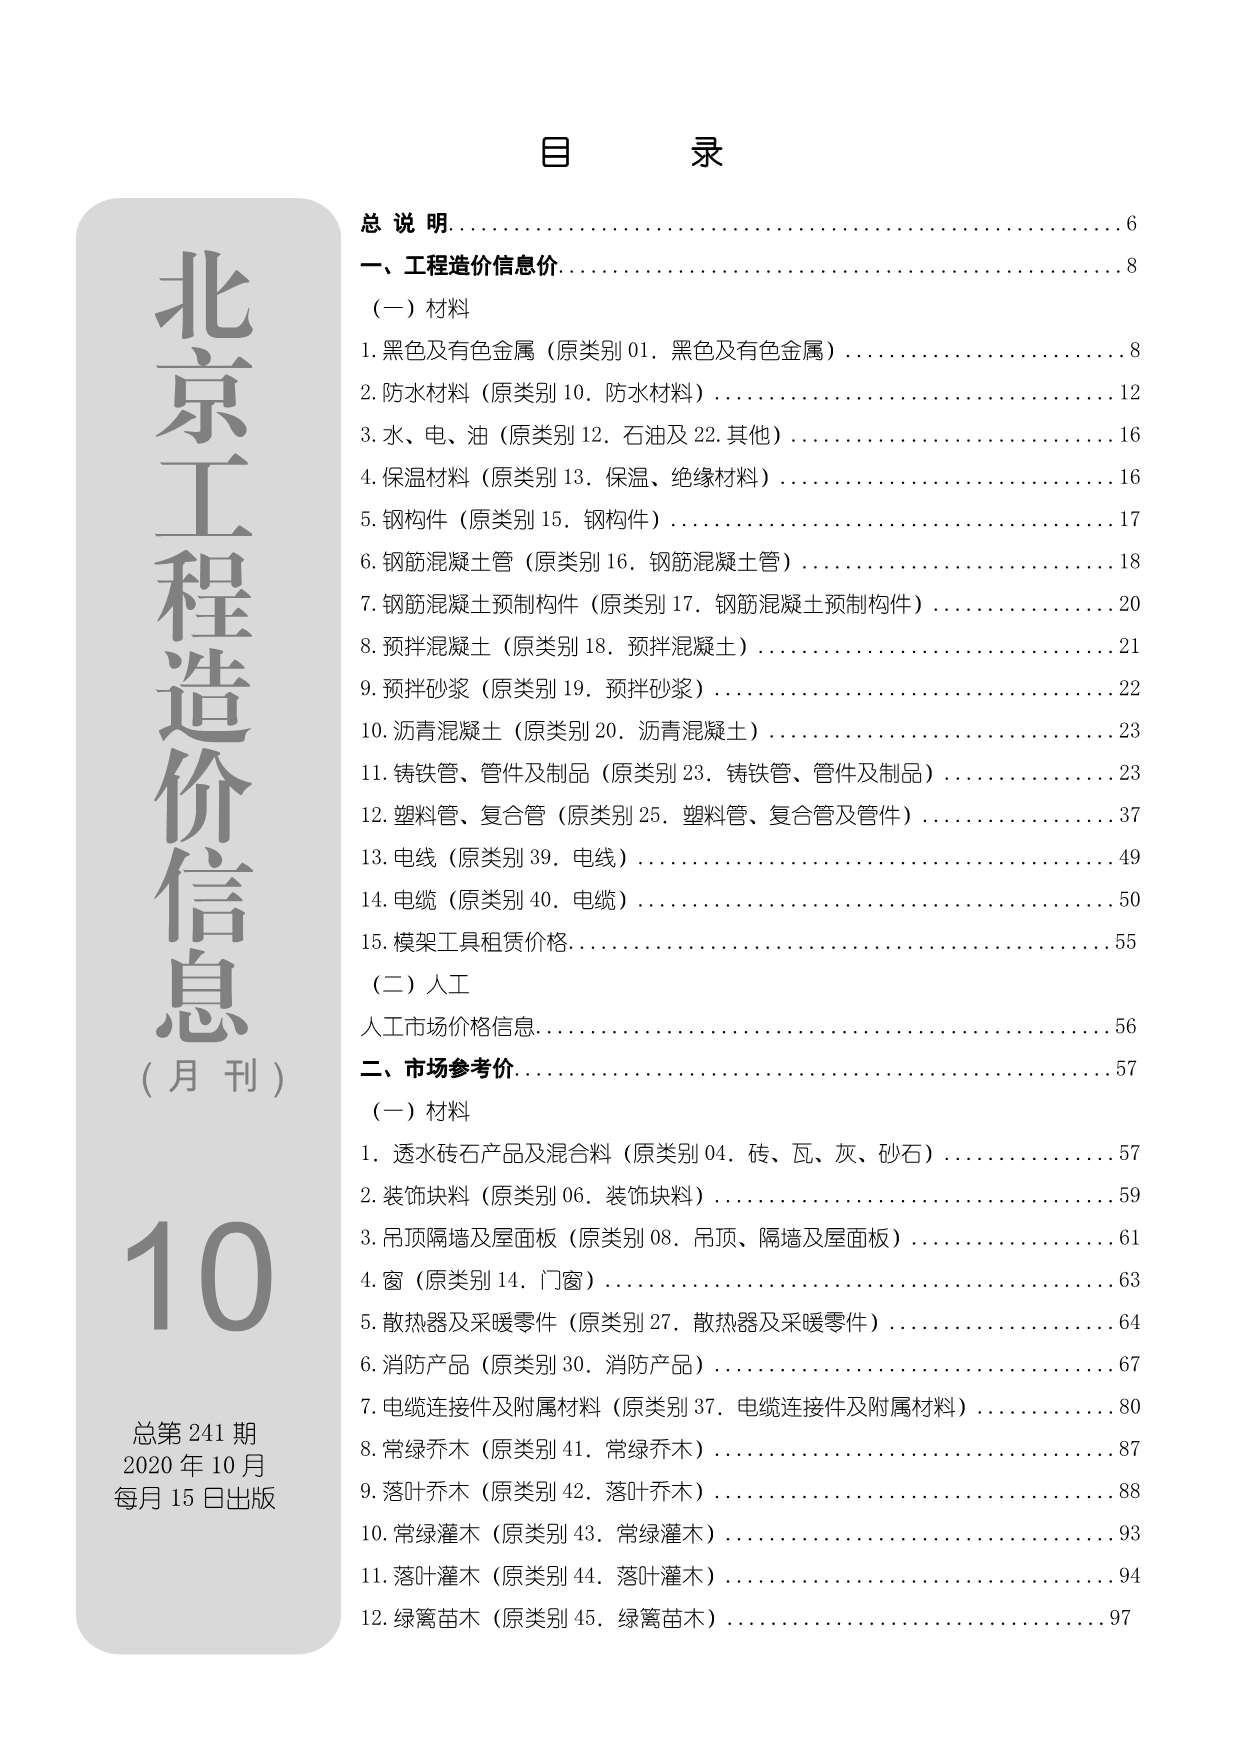 北京市2020年10月工程信息价_北京市信息价期刊PDF扫描件电子版